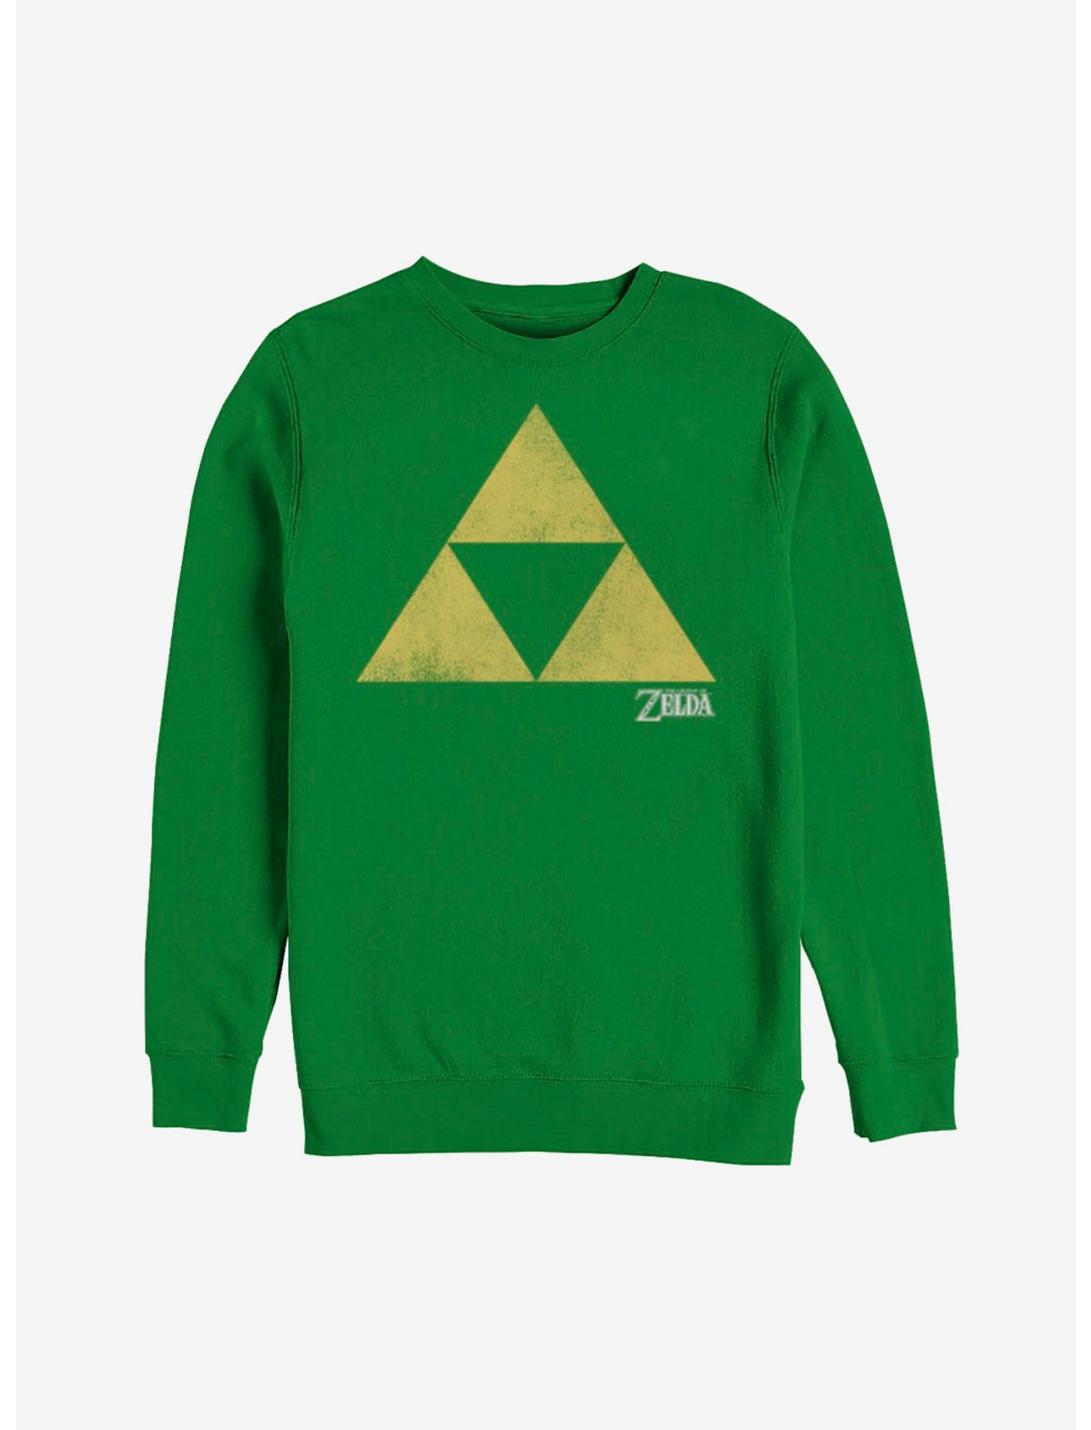 Nintendo Legend of Zelda Classic Triforce Sweatshirt, KELLY, hi-res